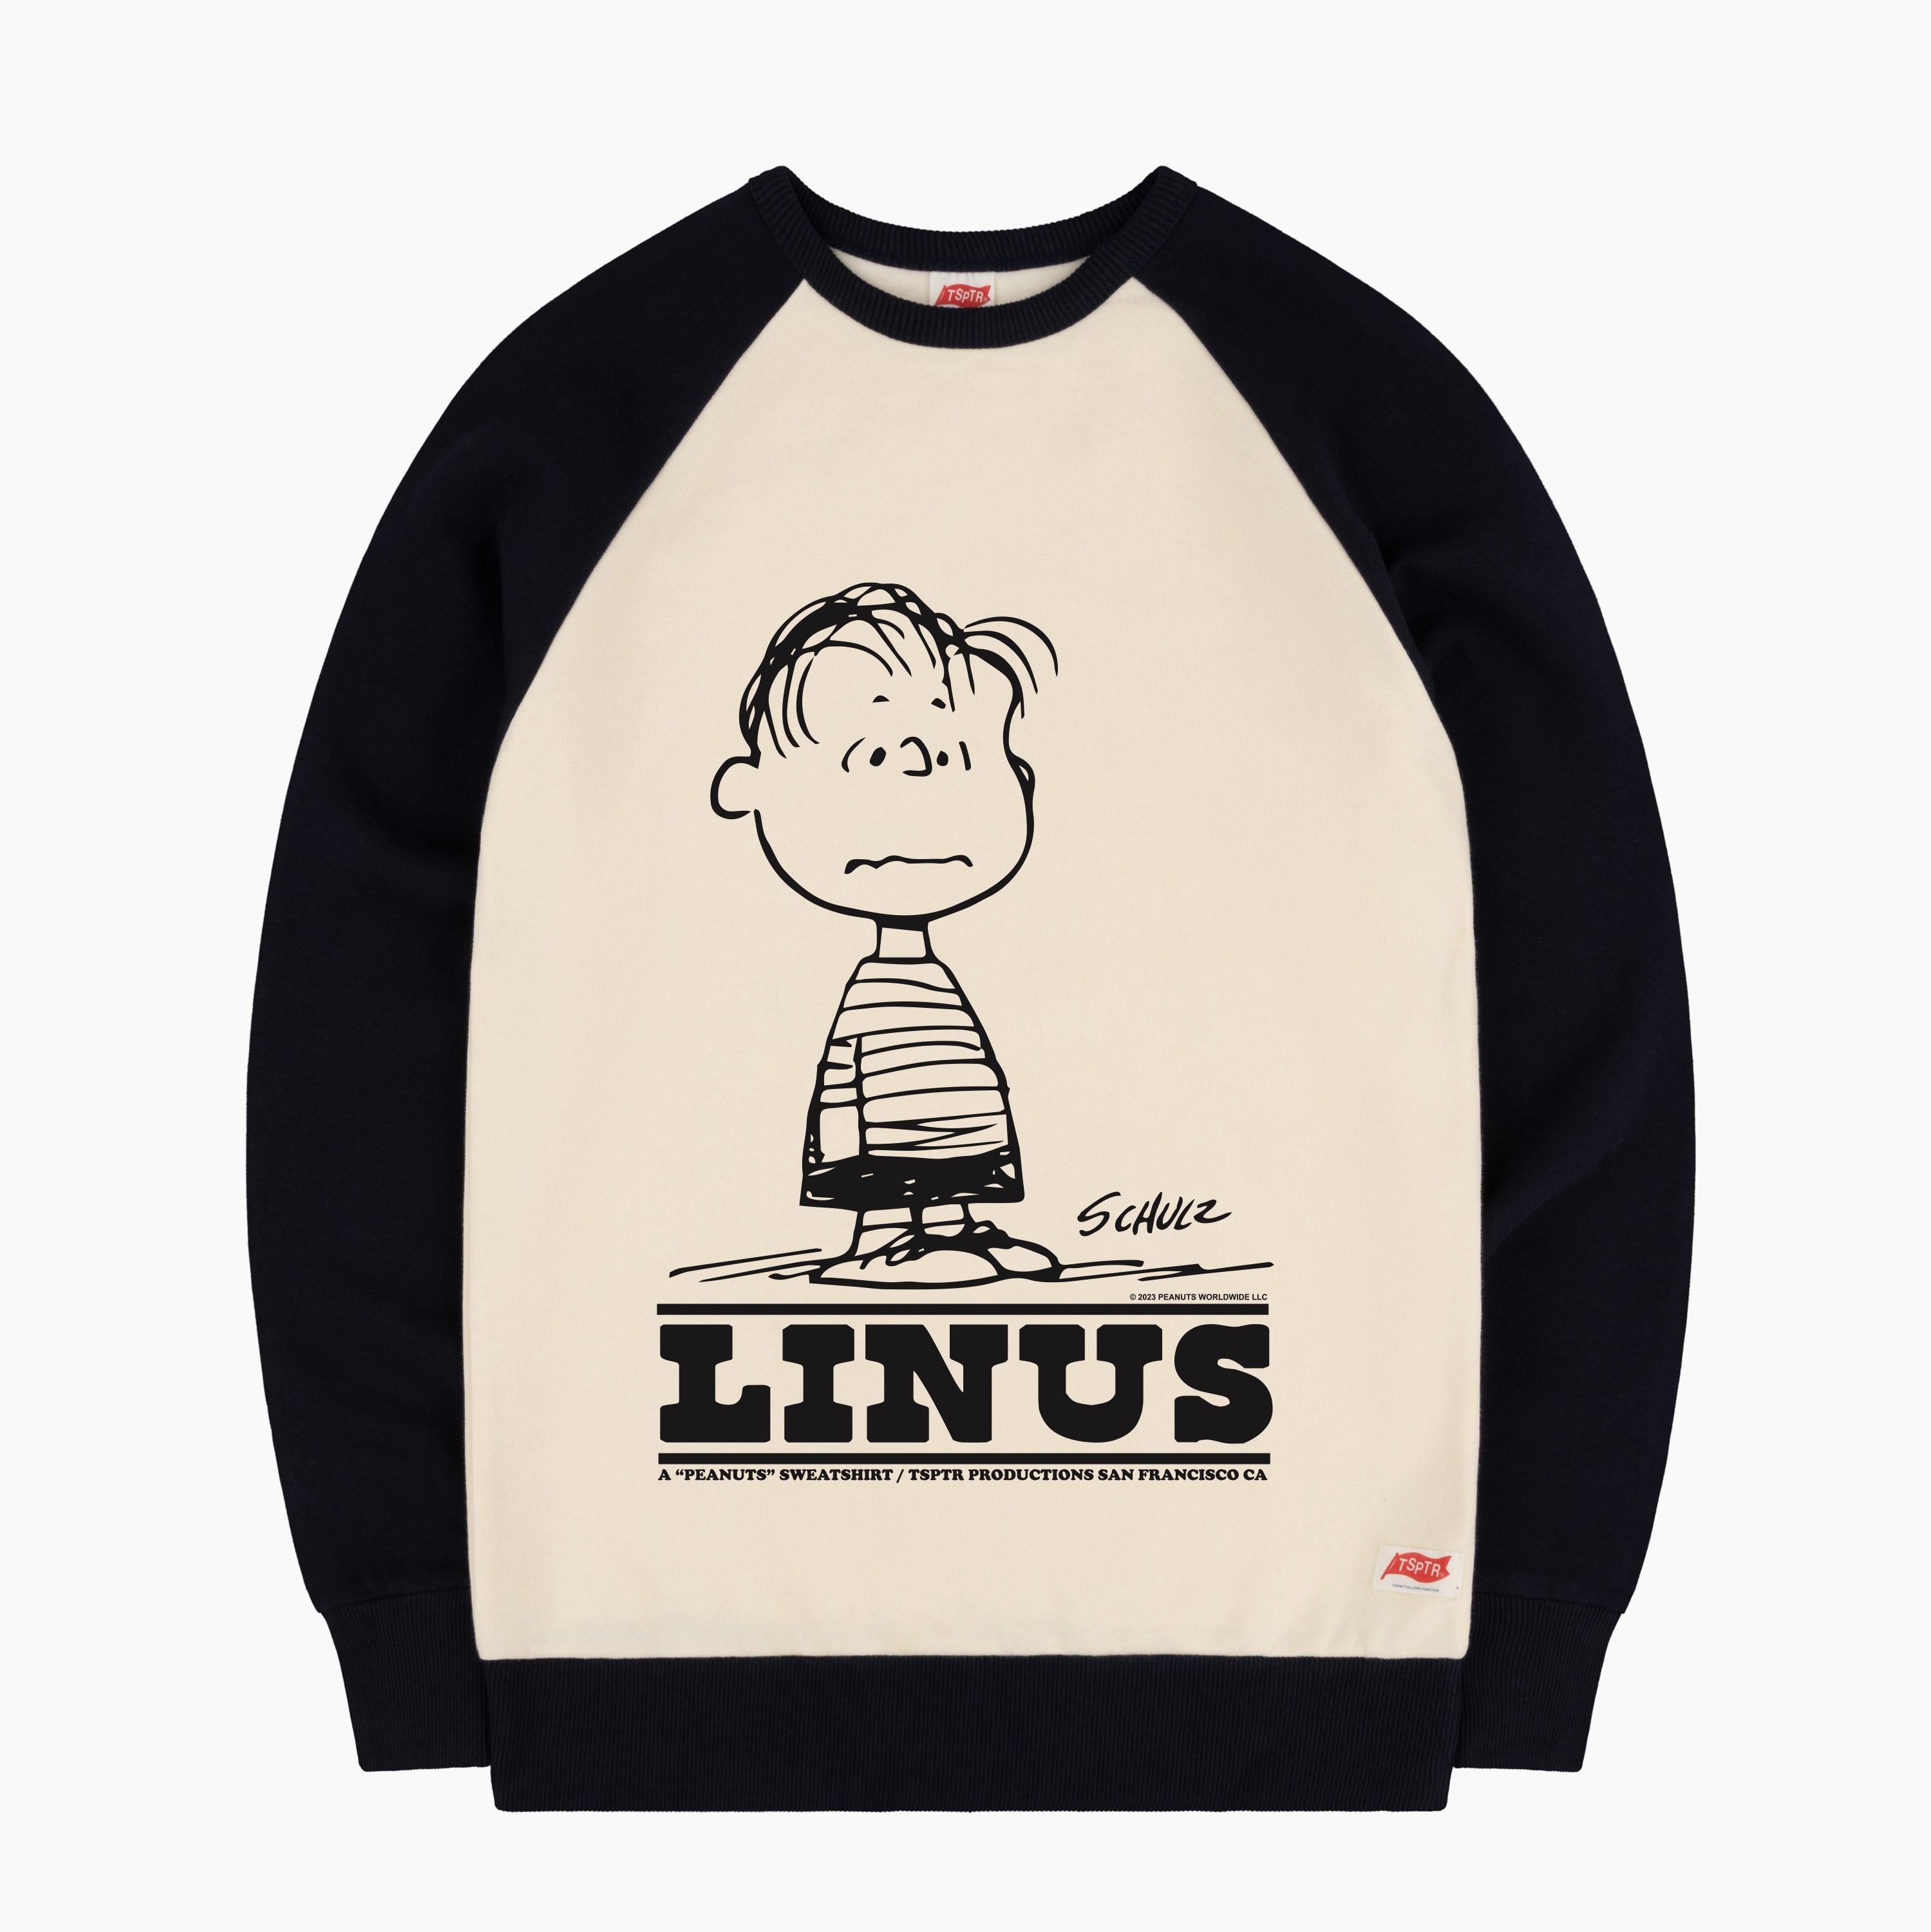 Linus I Love Mankind Raglan Sweatshirt